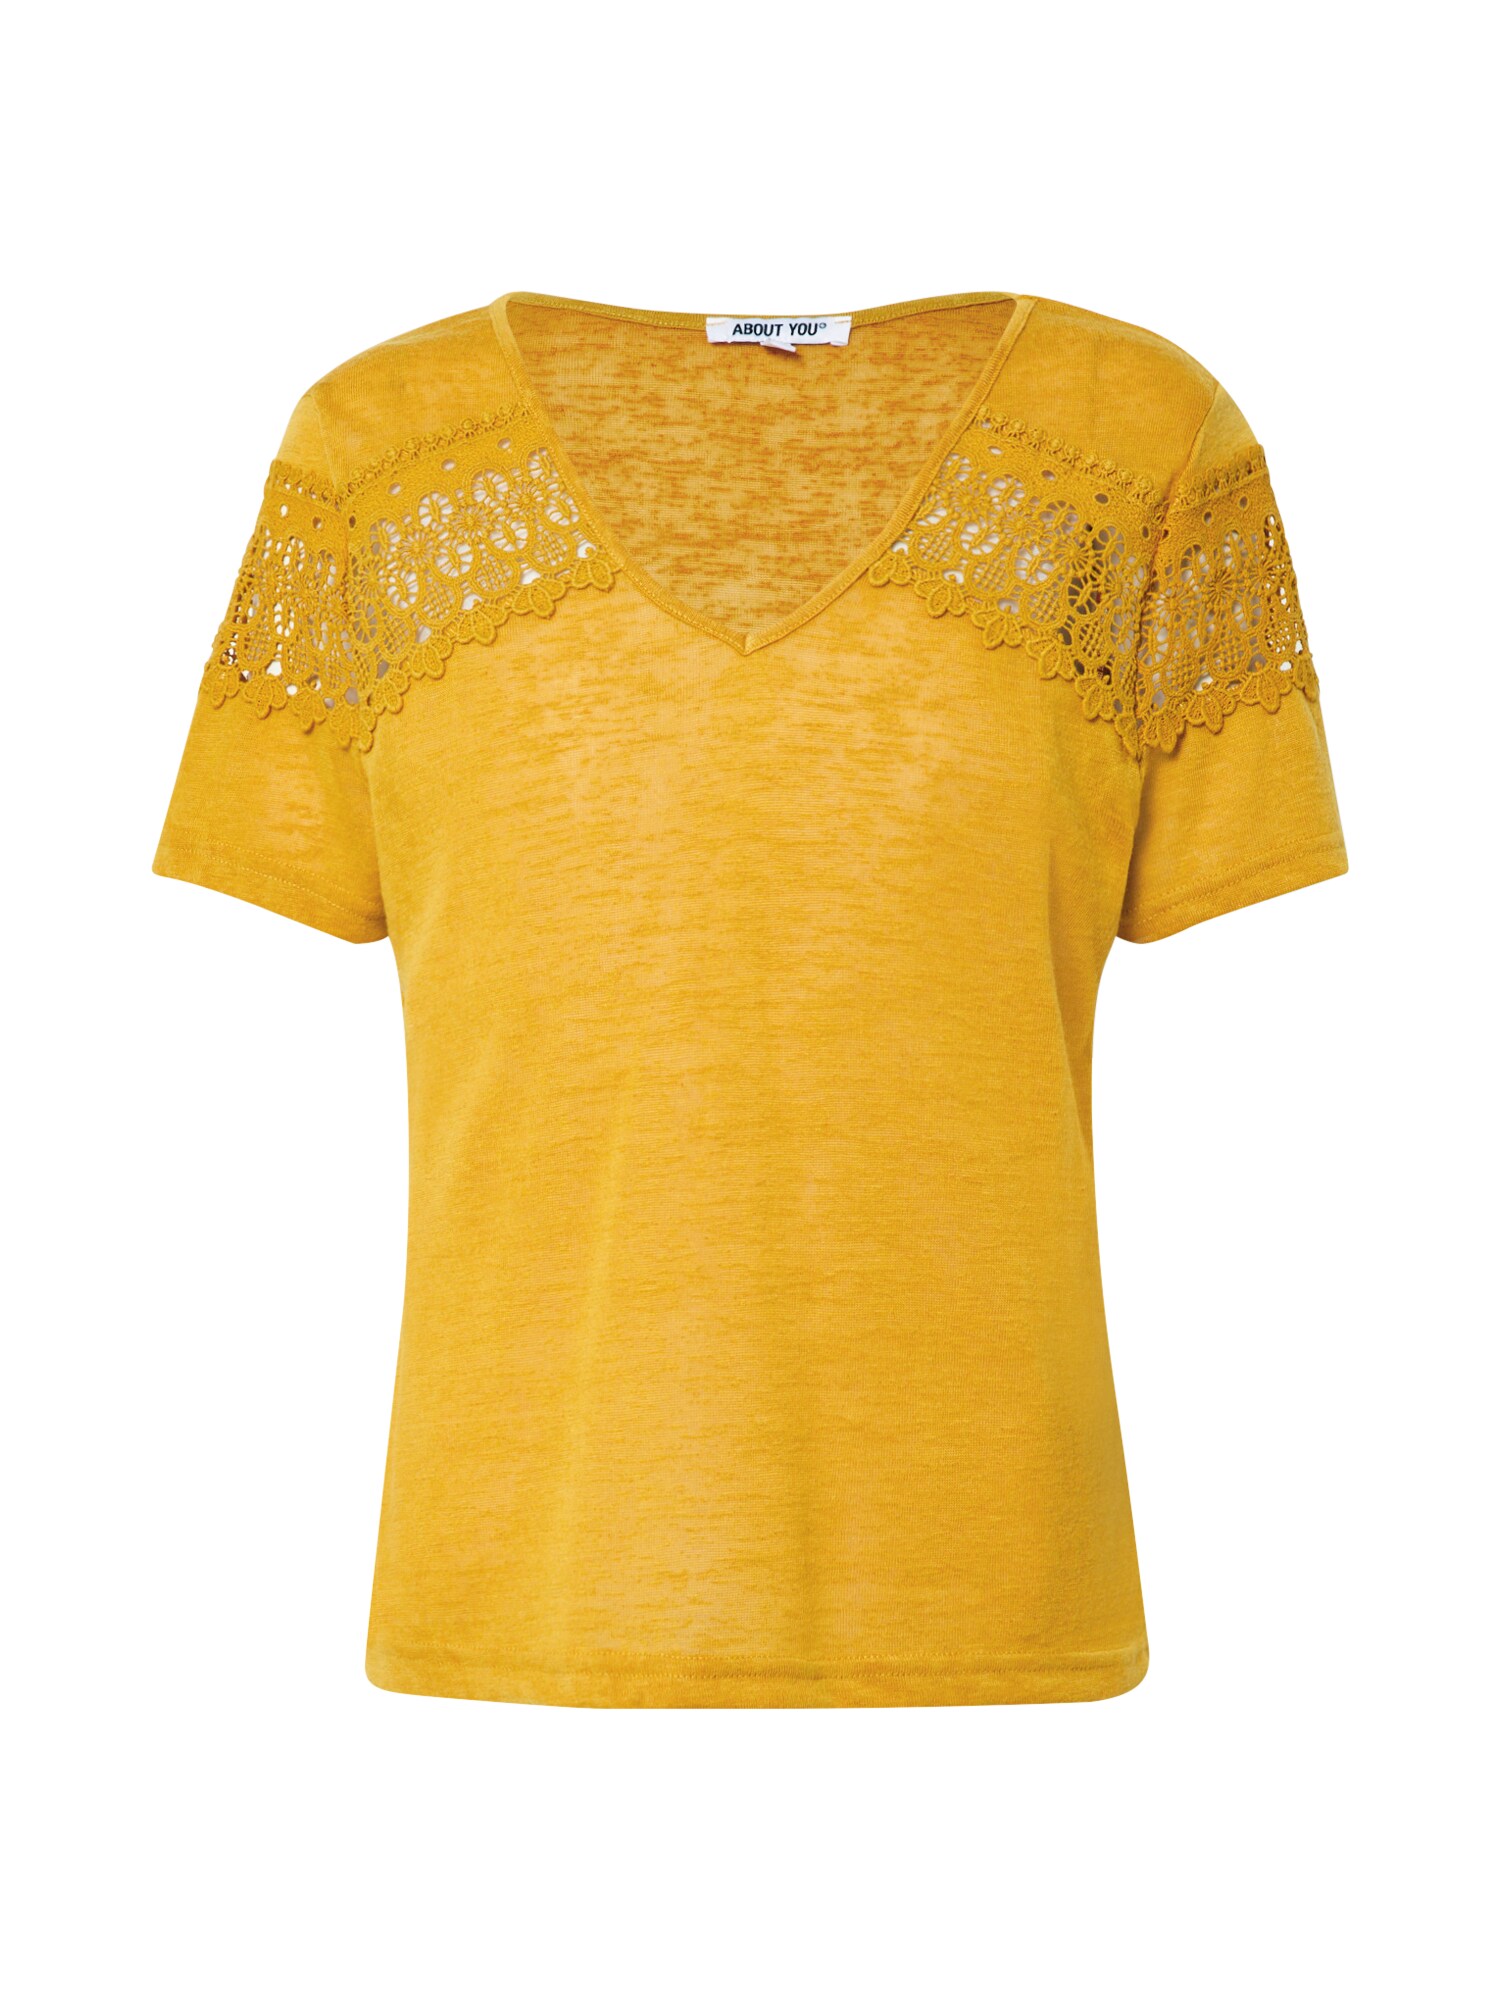 ABOUT YOU Marškinėliai 'Kimia'  geltona / garstyčių spalva